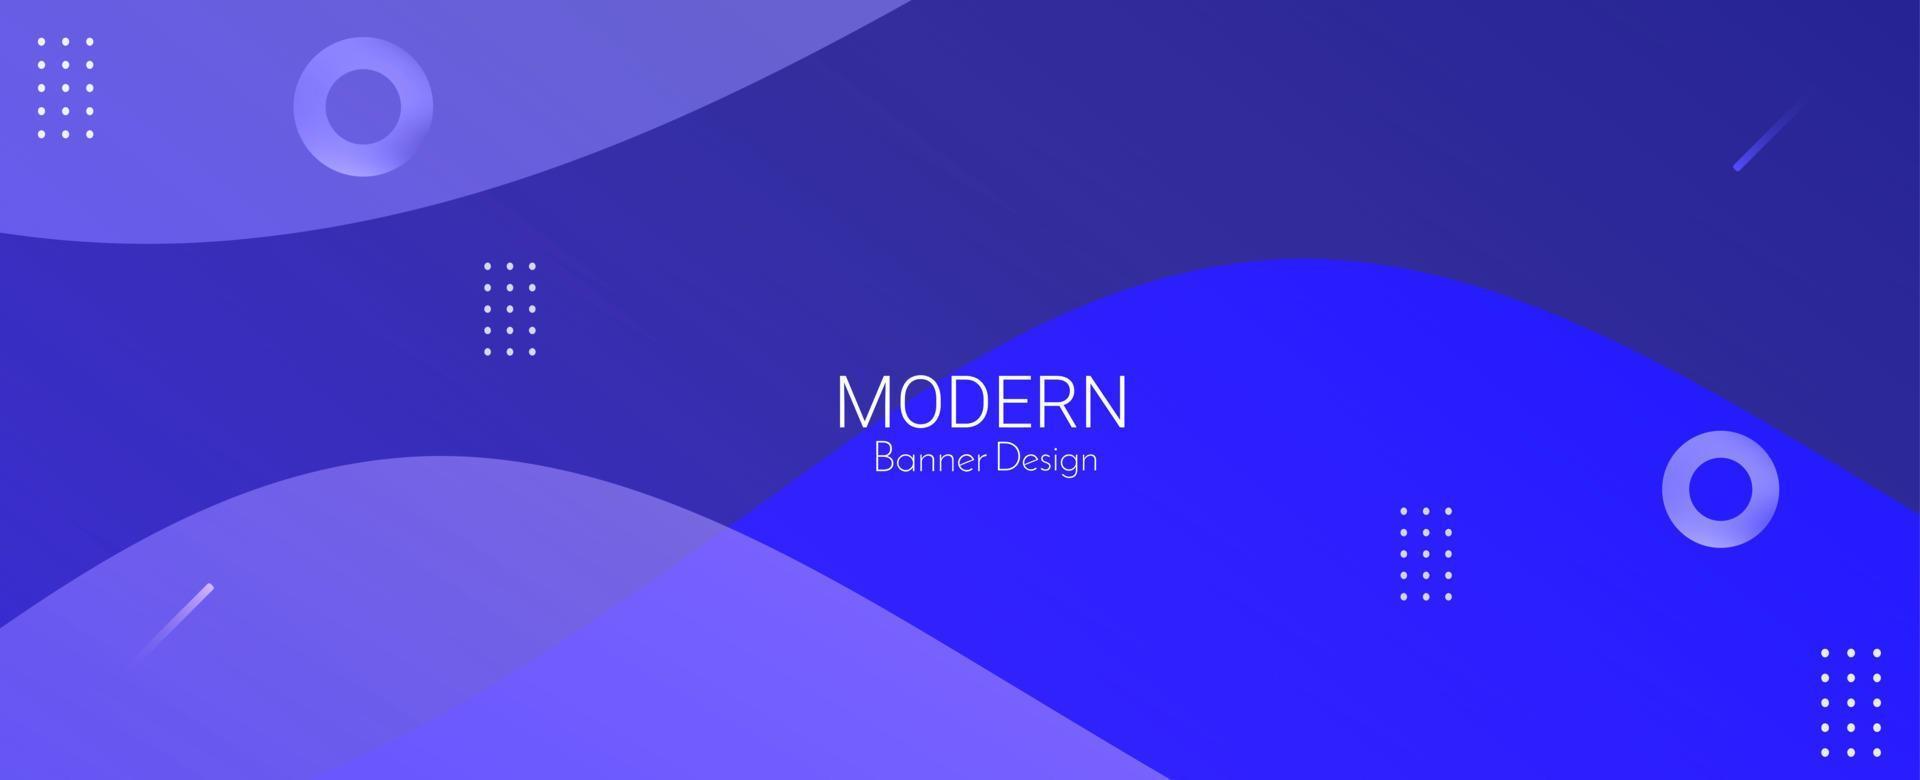 abstrato geométrico moderno azul decorativo colorido projeto banner padrão de fundo vetor